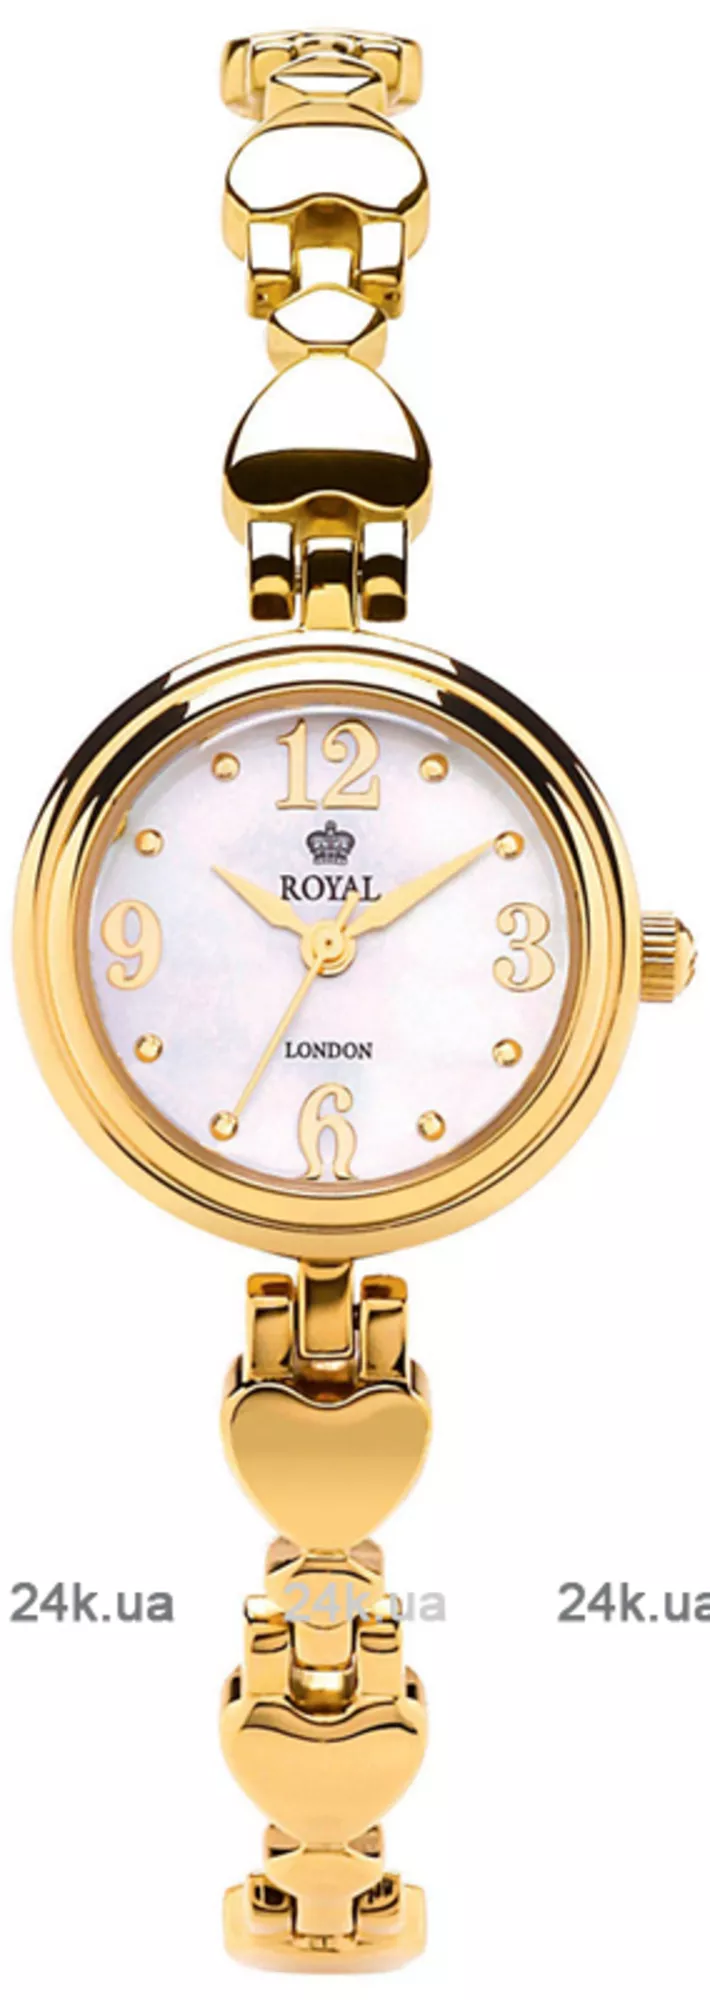 Часы Royal London 21240-02